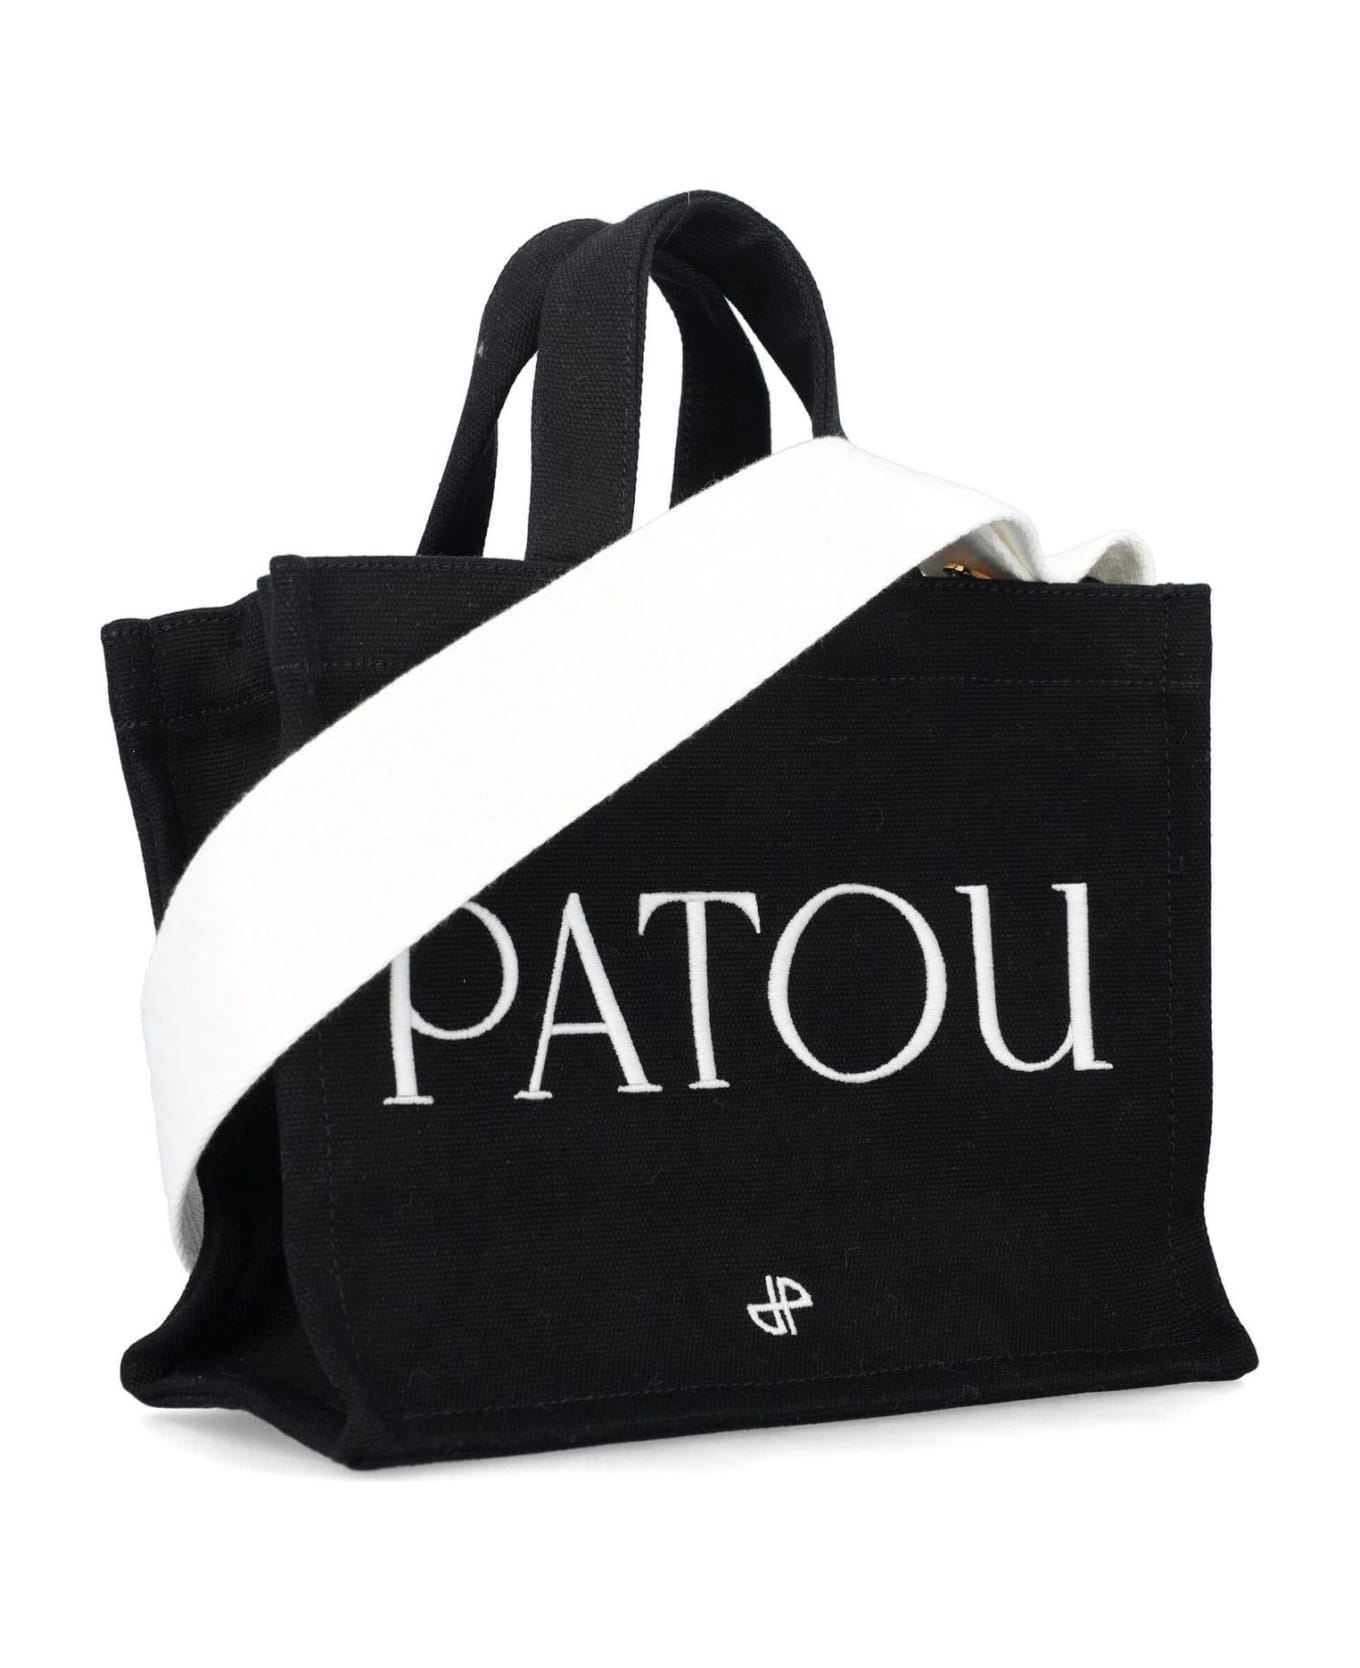 Patou Black Organic Cotton Tote Bag - Black